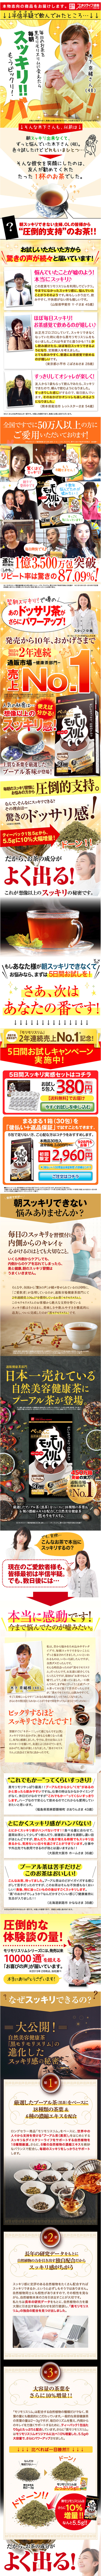 自然美容健康茶「黒モリモリスリム」体験キャンペーン_sp_1